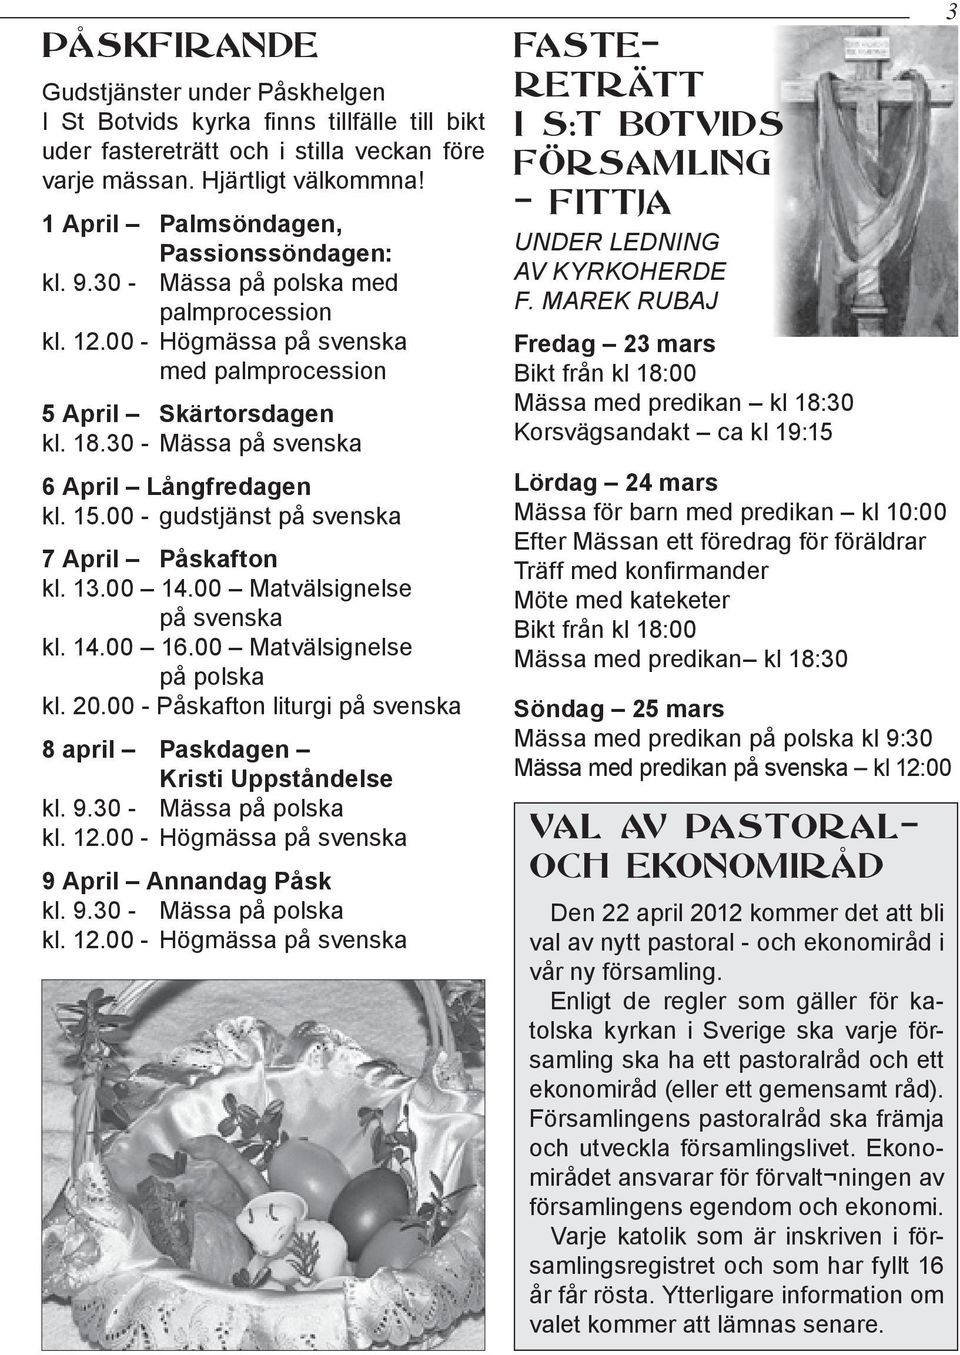 30 - Mässa på svenska 6 April Långfredagen kl. 15.00 - gudstjänst på svenska 7 April Påskafton kl. 13.00 14.00 Matvälsignelse på svenska kl. 14.00 16.00 Matvälsignelse på polska kl. 20.